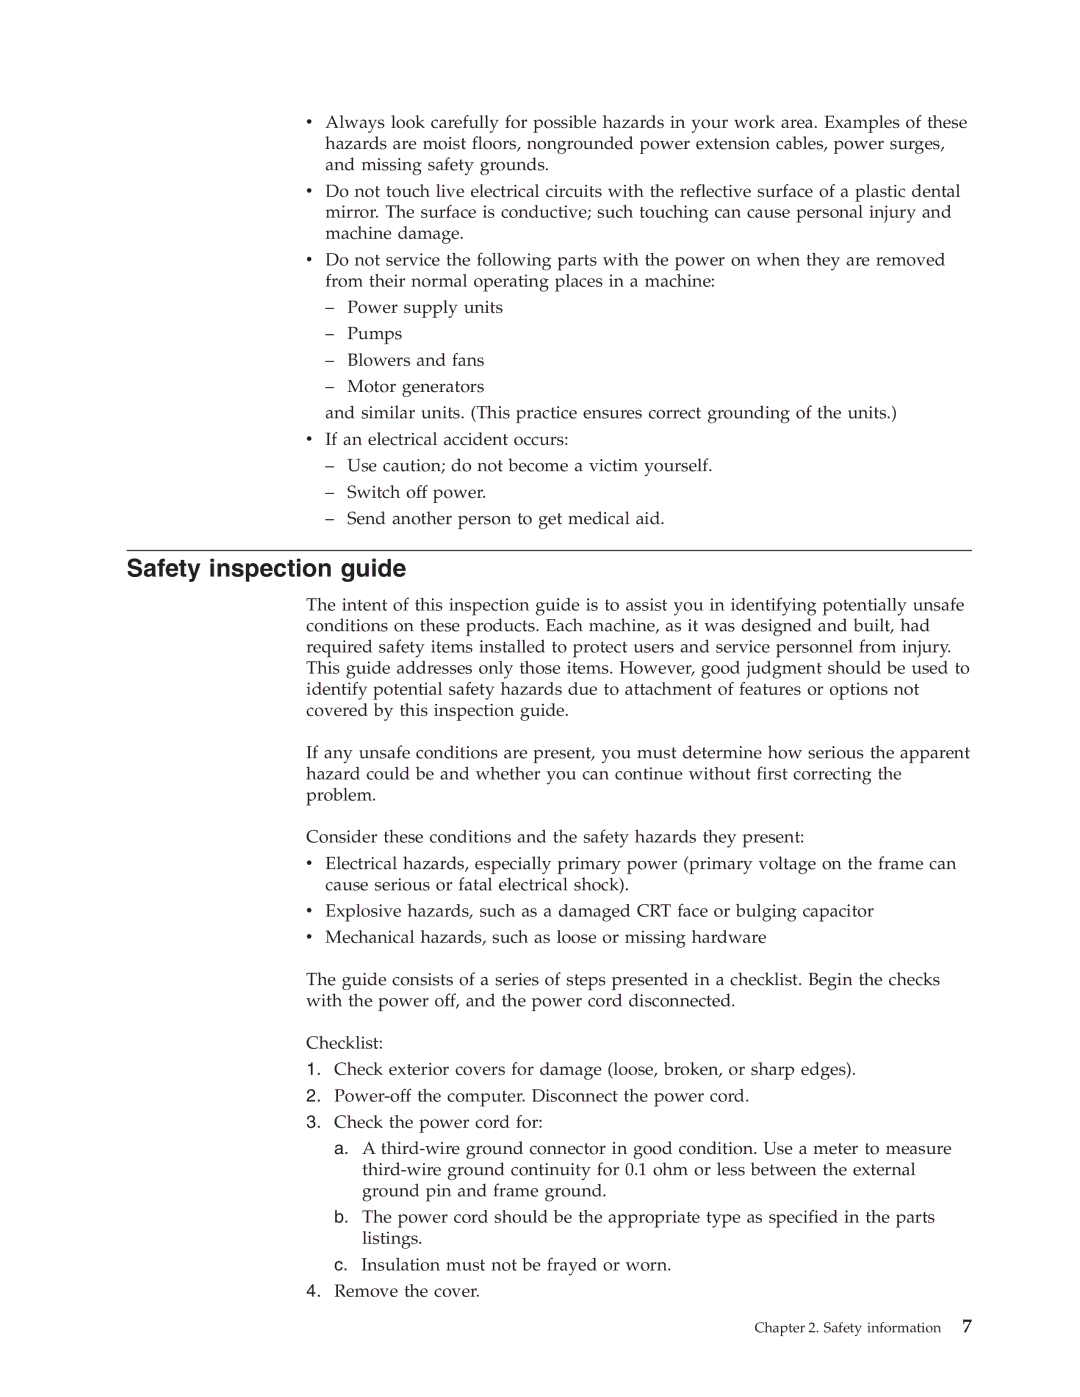 Lenovo E200 manual Safety inspection guide 